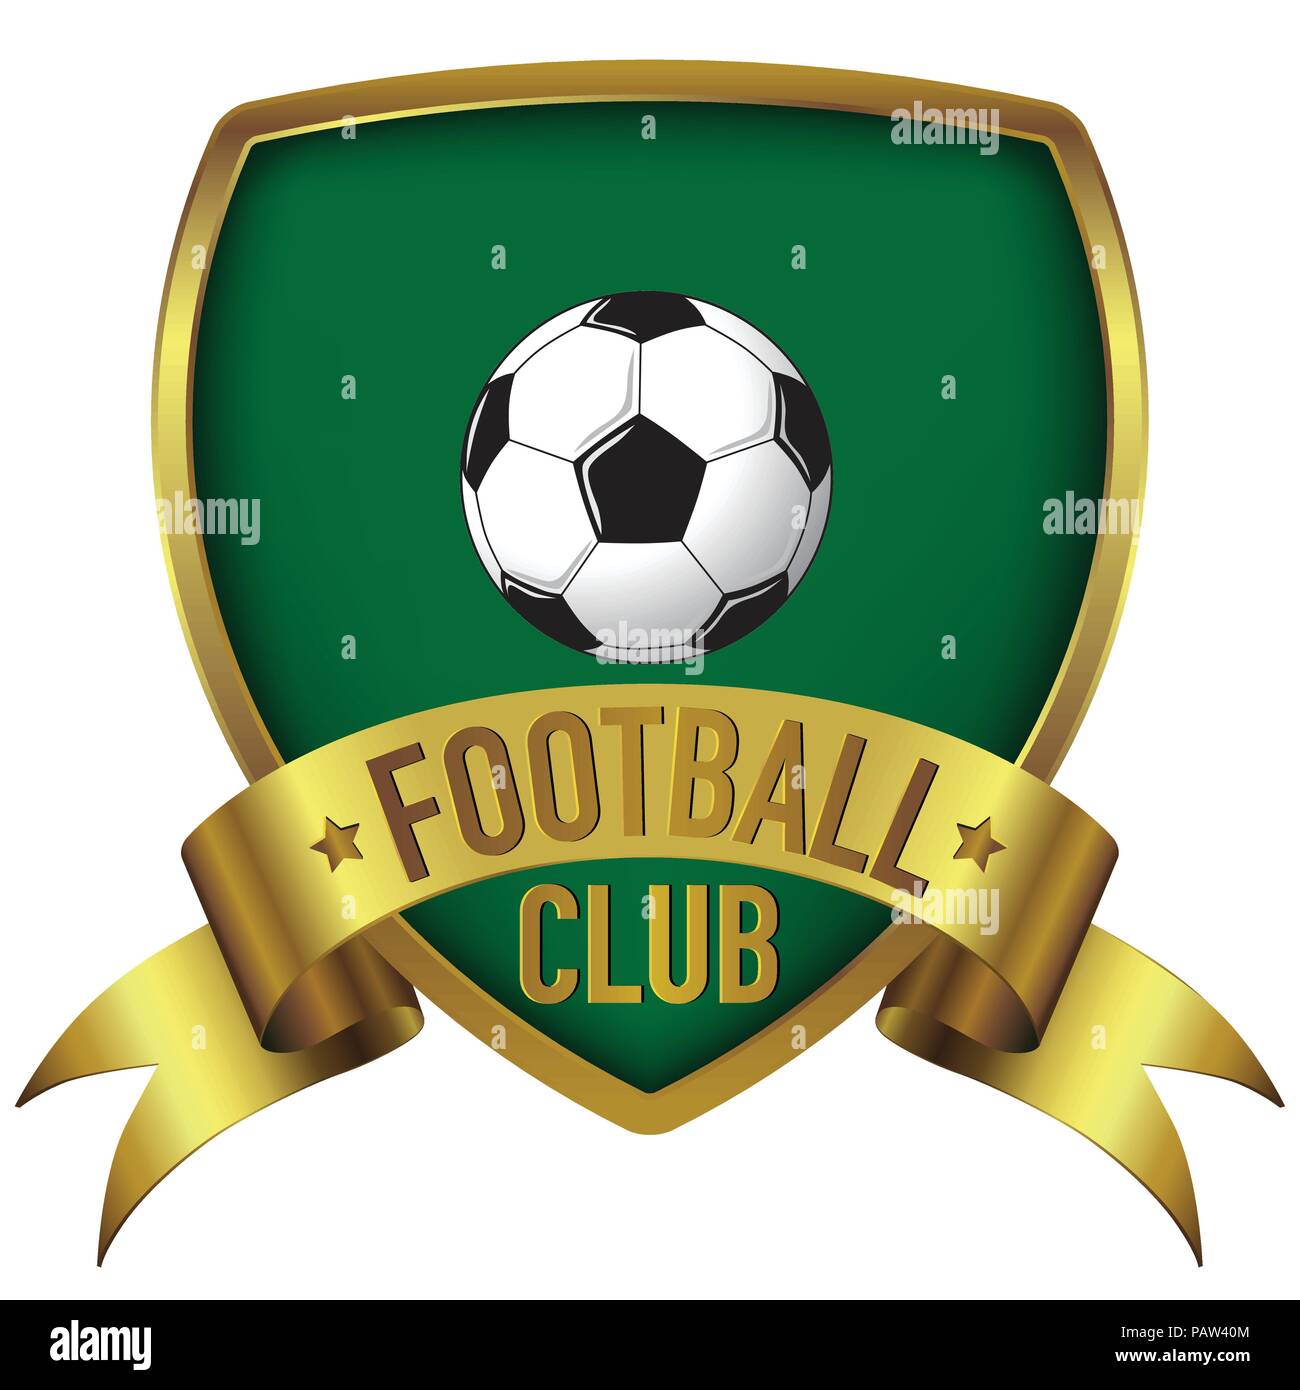 Football Club logo design in sfondo verde con cornice dorata e il nastro di inchiostro Illustrazione Vettoriale